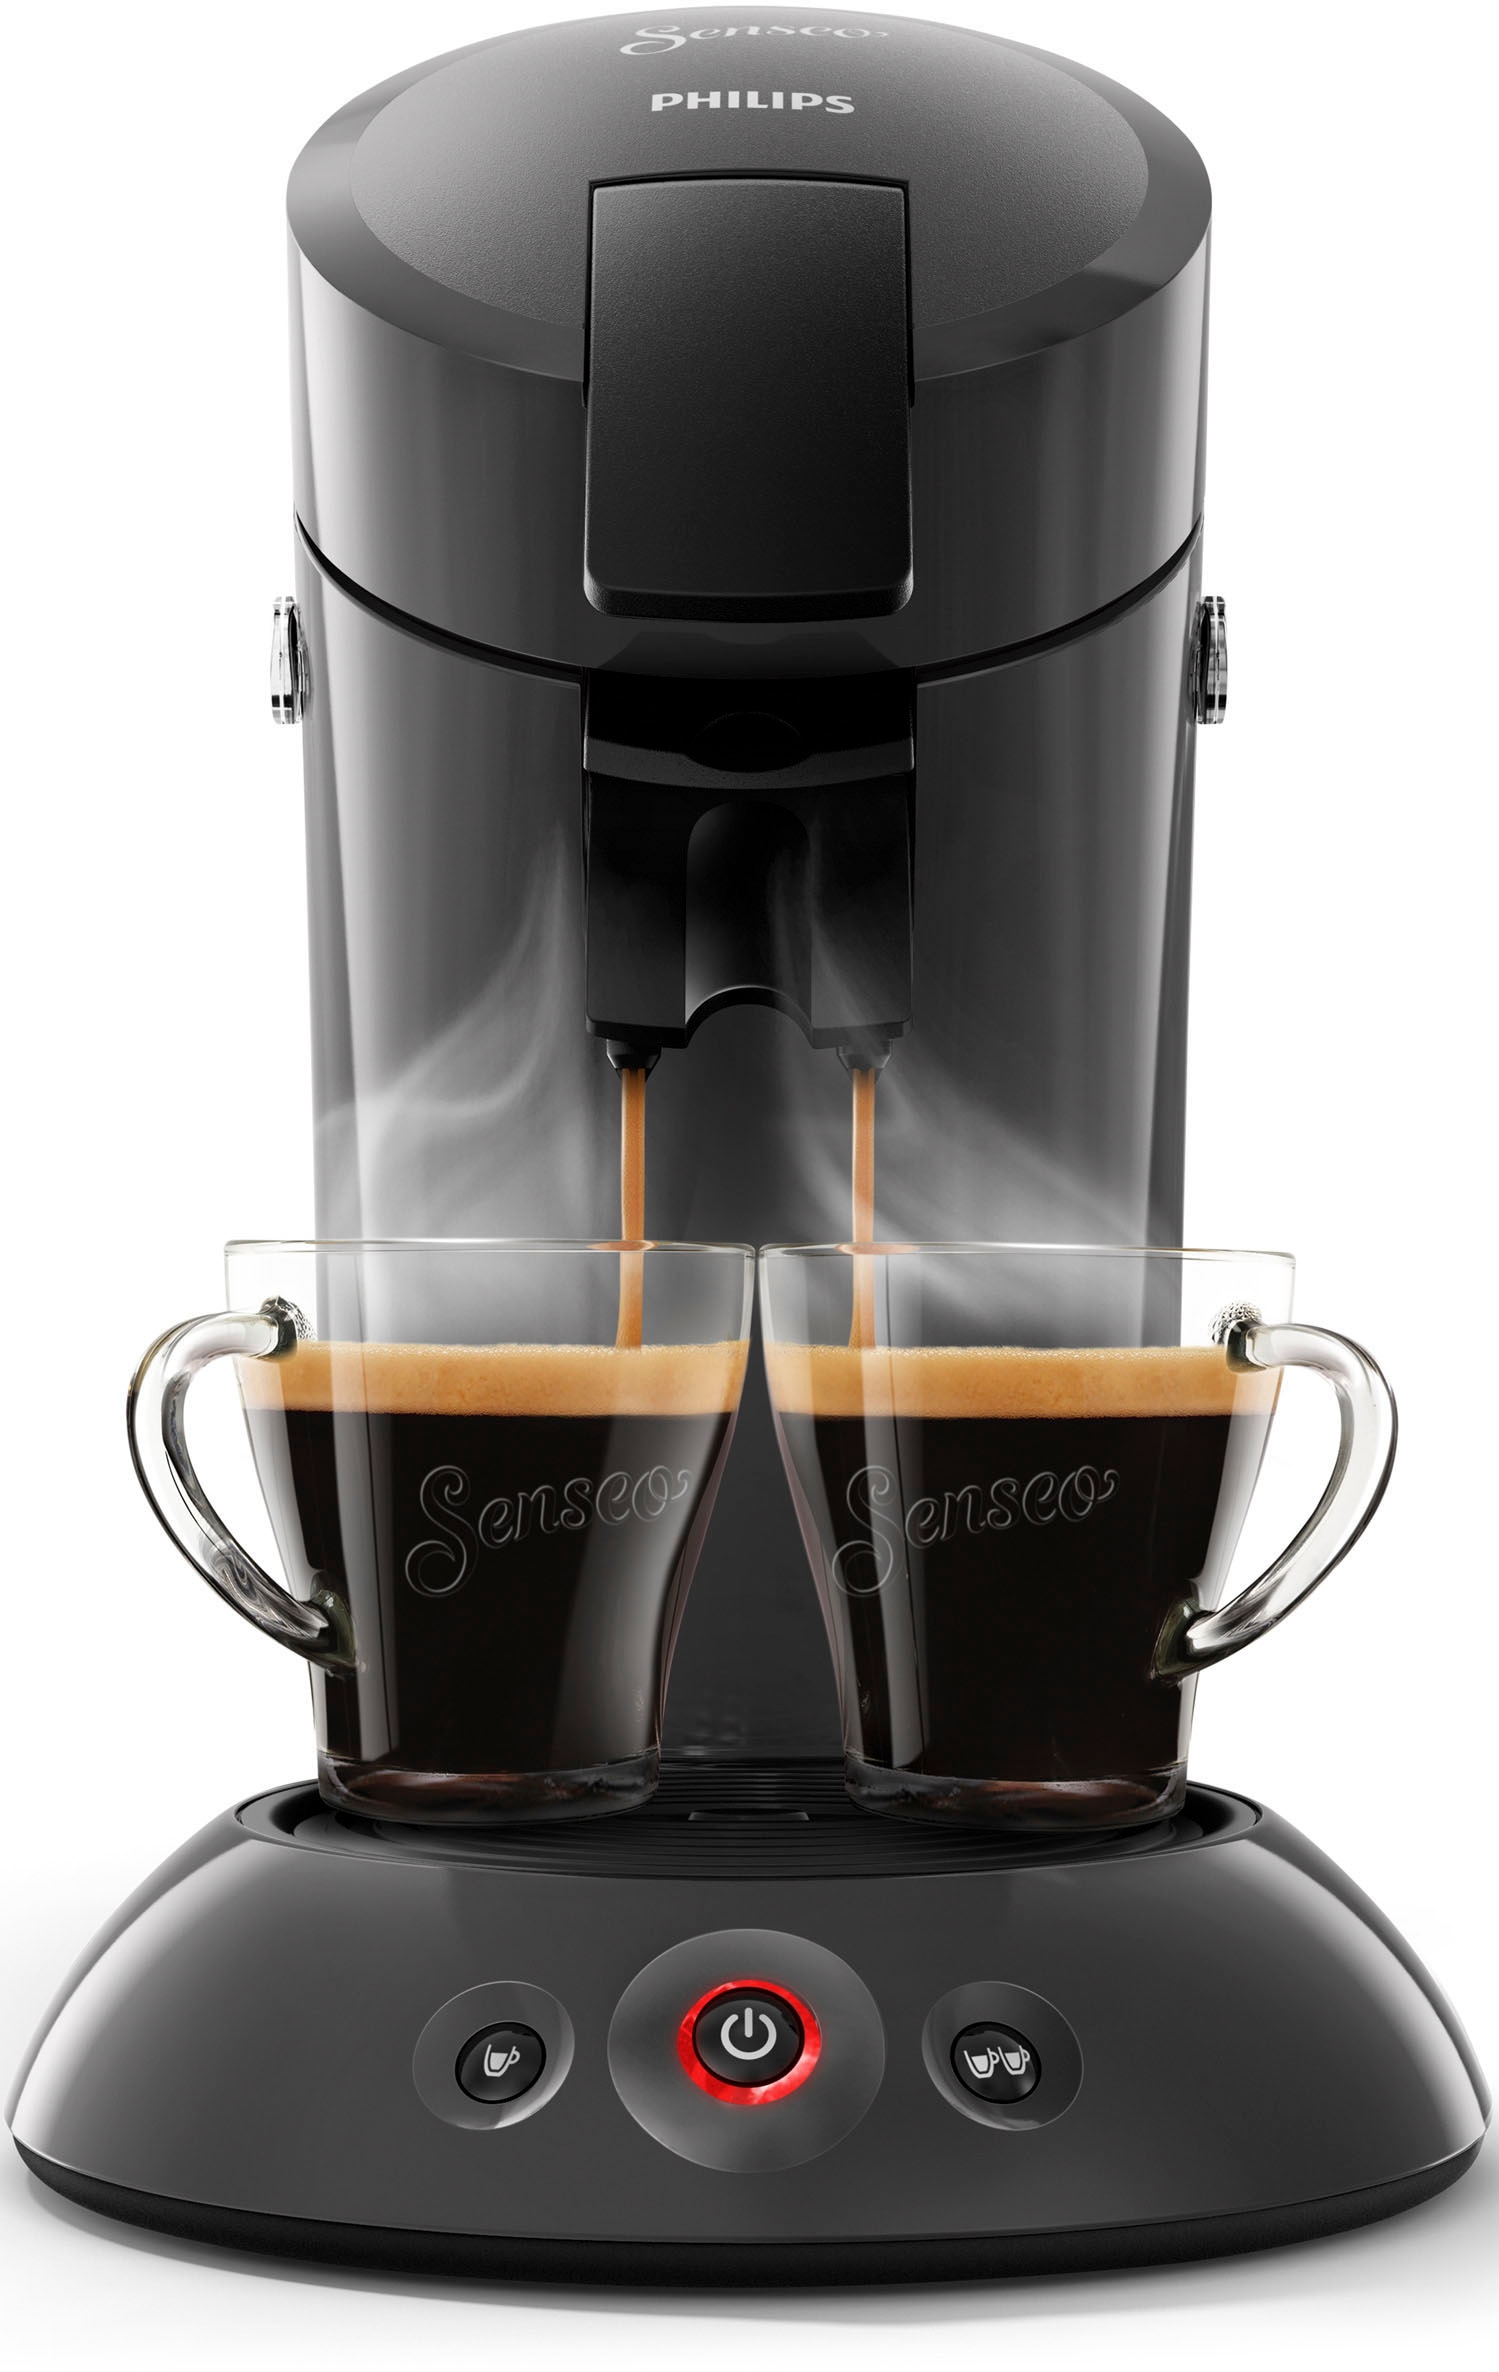 Philips Senseo Kaffeepadmaschine Garantie HD6553/65«, inkl. Wert Milchaufschäumer XXL UVP 79,99 von Jahren mit im € »Original 3